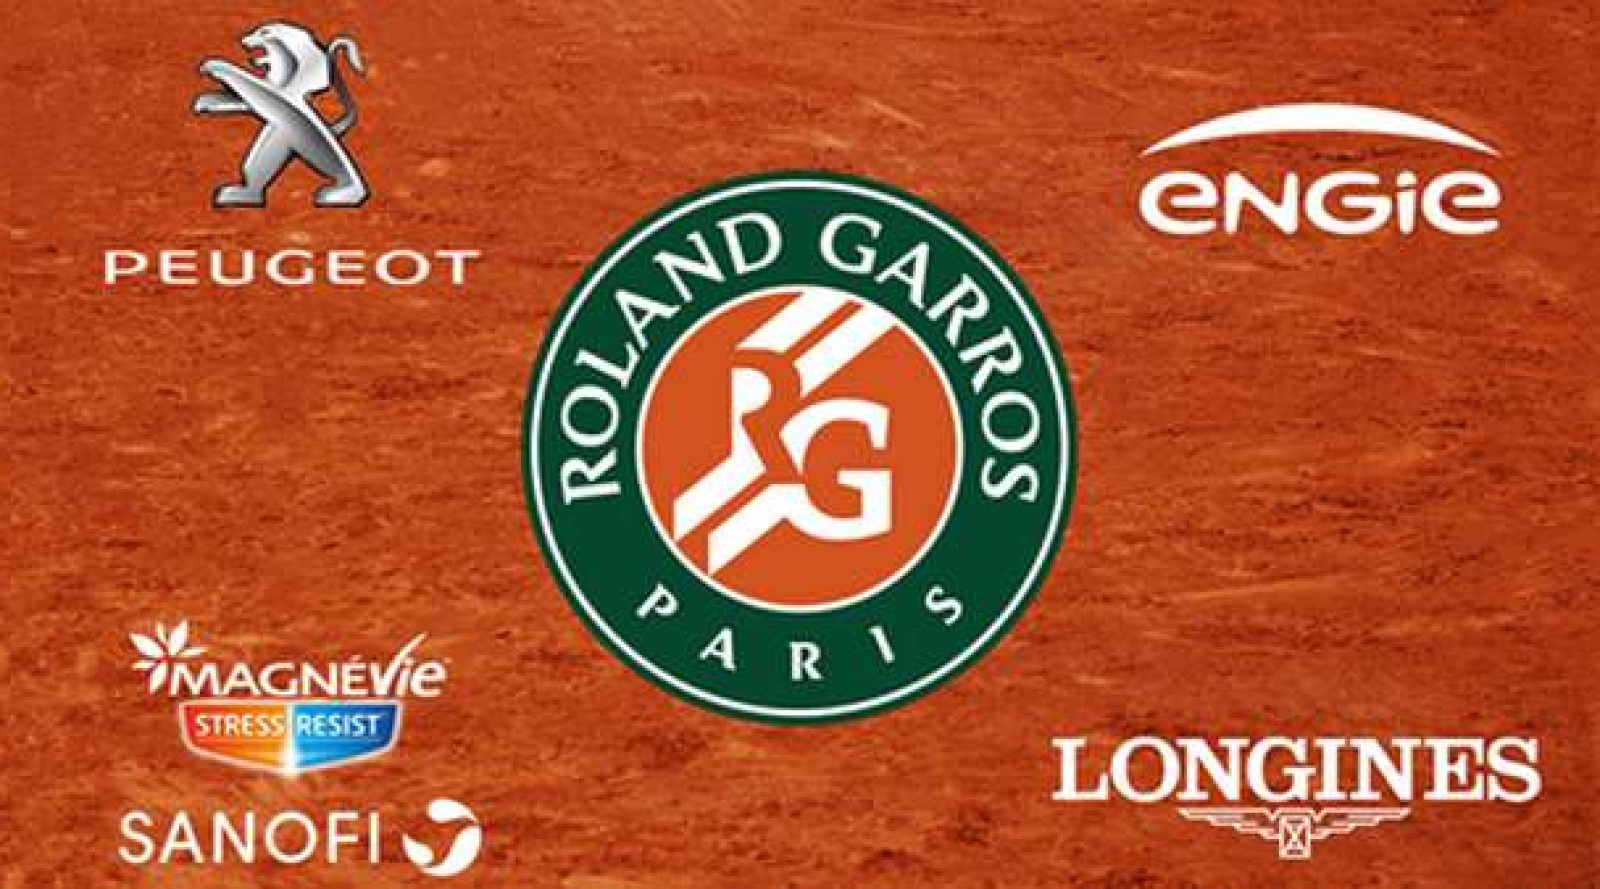 Roland Garros 4 parrains officiels sur France Télévisions Image